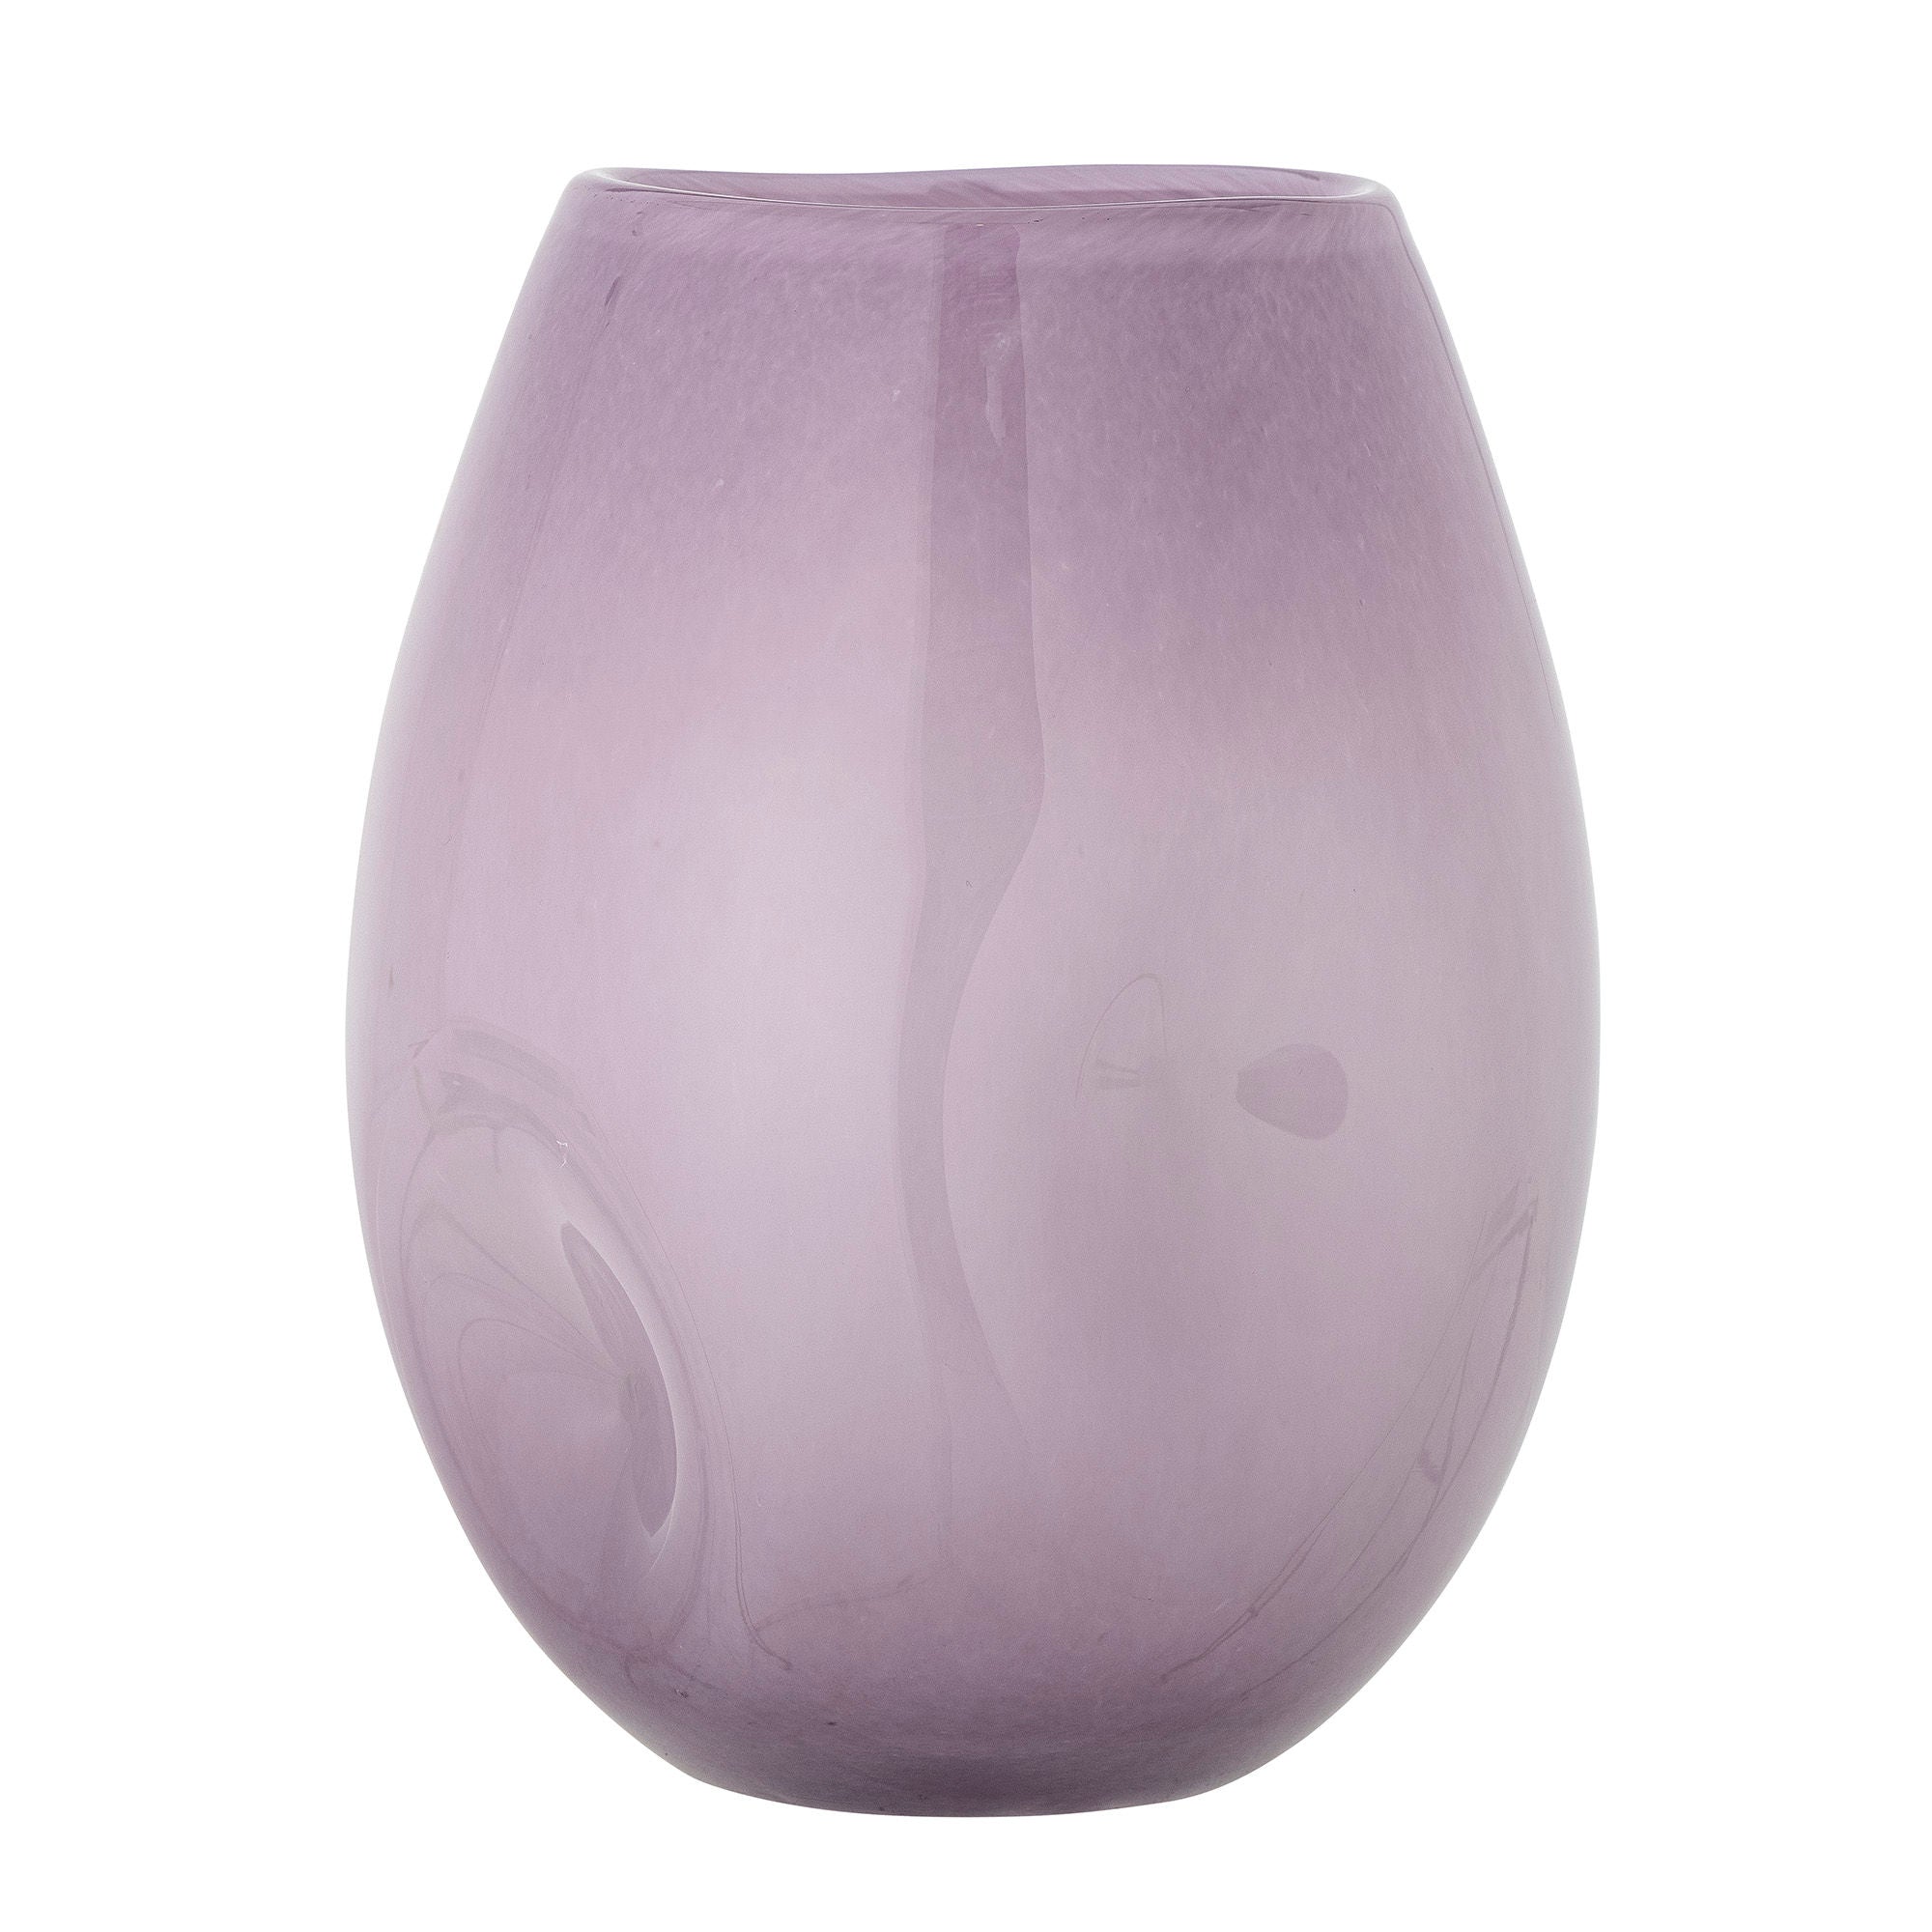 Die Lilac Vase von Creative Collection ist eine elegante Glasvase in einer staubigen lila Farbe mit einem weichen organischen Design und schönen Details, die das Auge fangen.